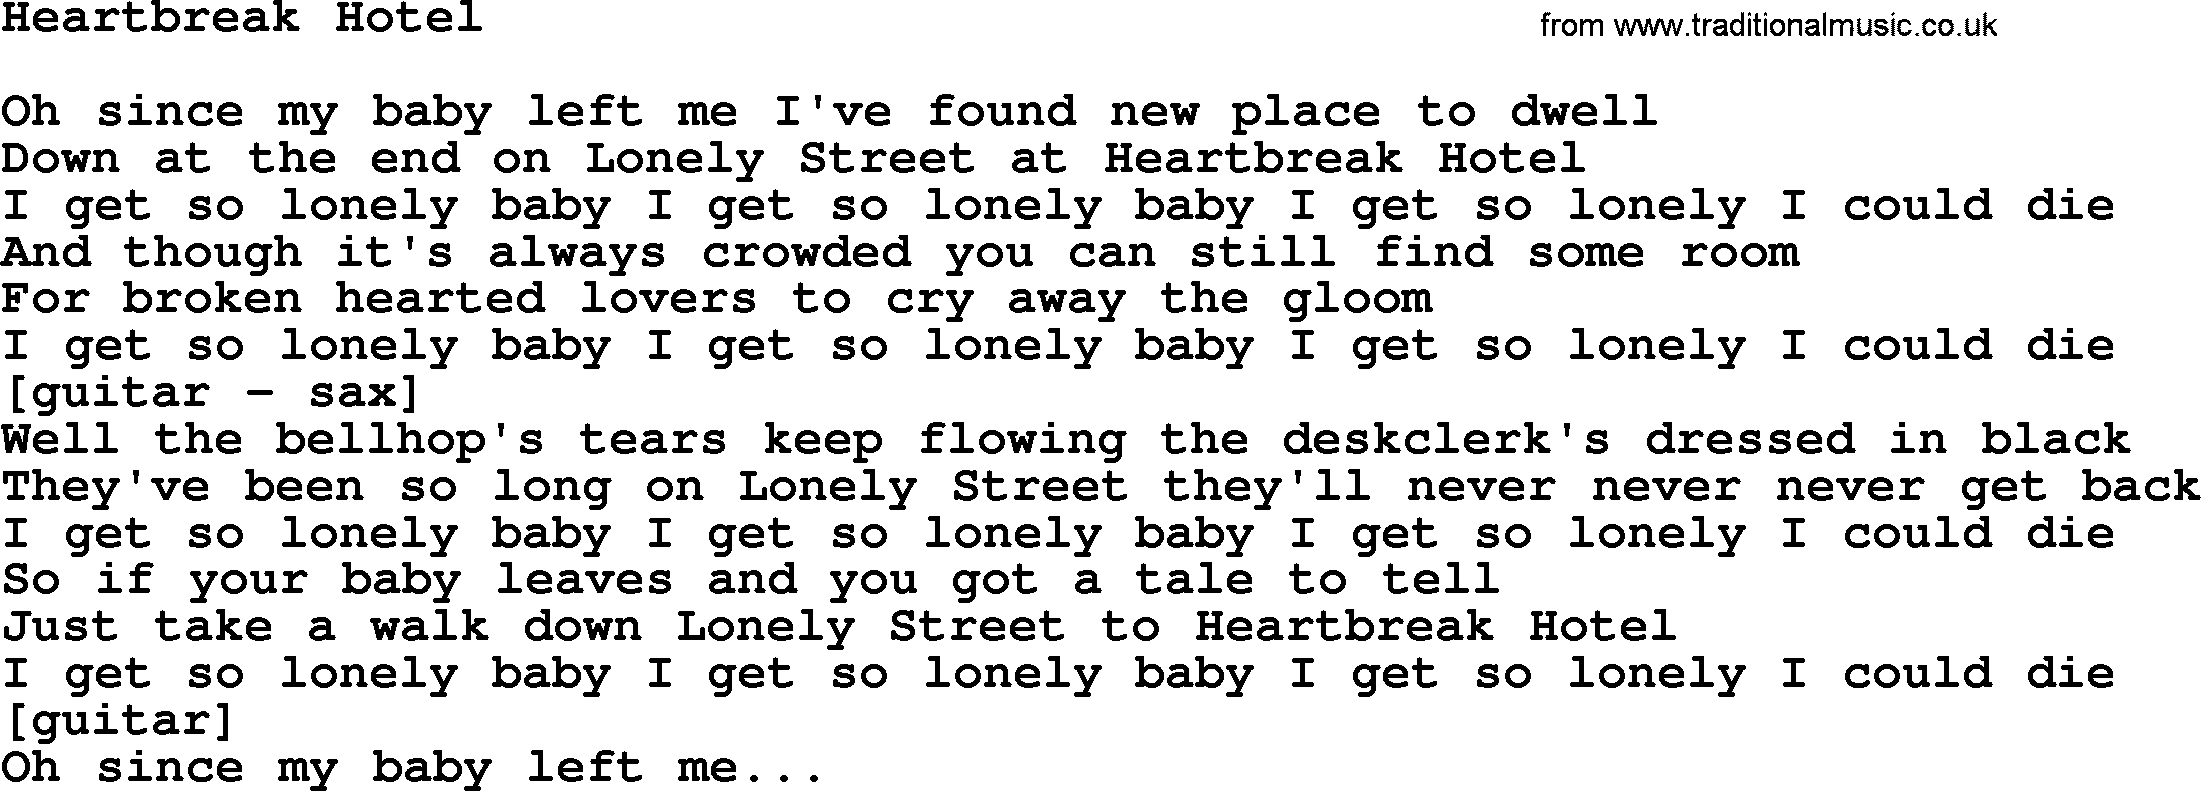 Willie Nelson song: Heartbreak Hotel lyrics